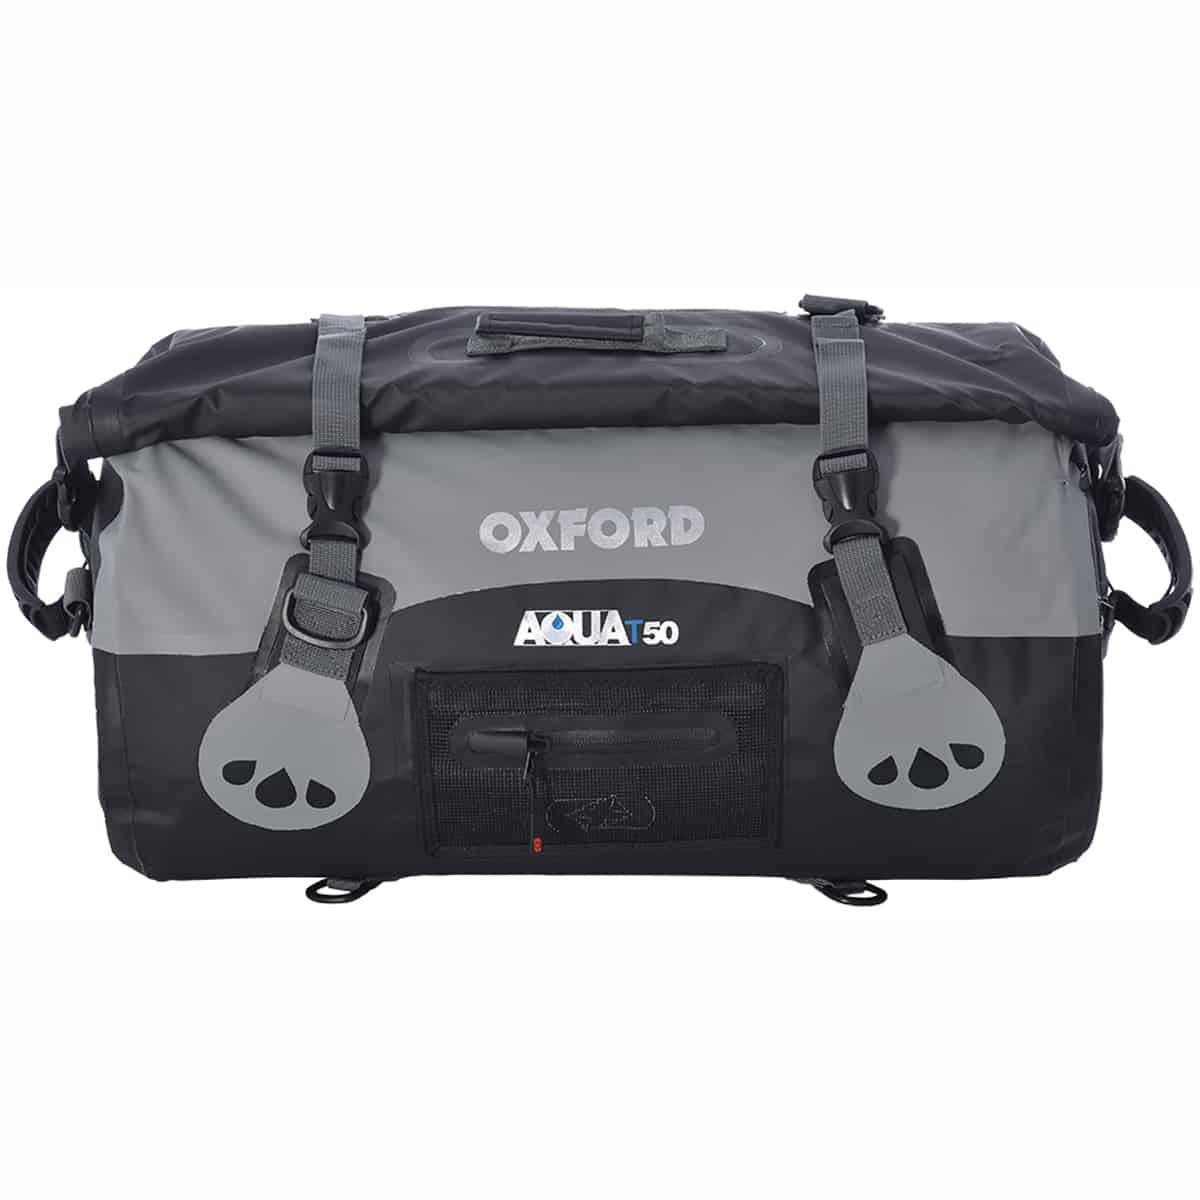 Oxford Aqua T50 Roll Bag 50 Litres WP